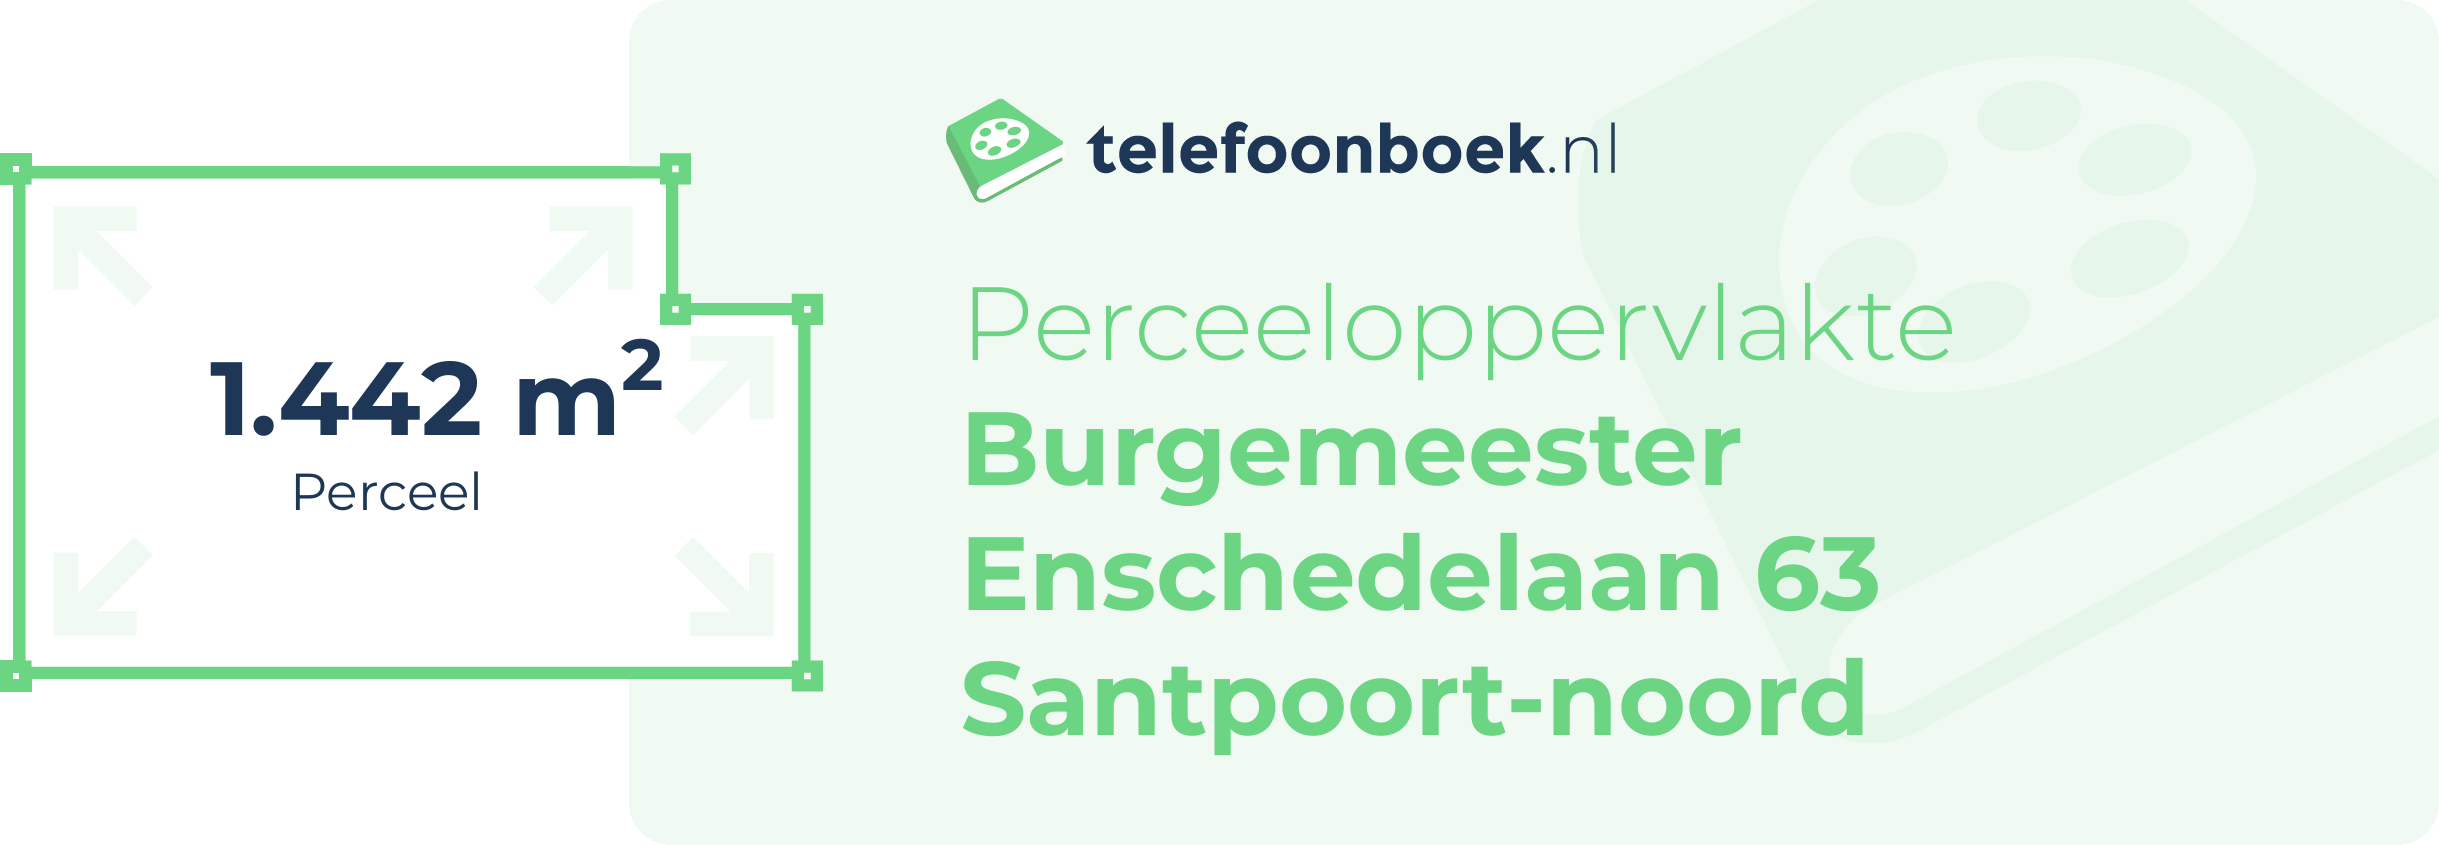 Perceeloppervlakte Burgemeester Enschedelaan 63 Santpoort-Noord